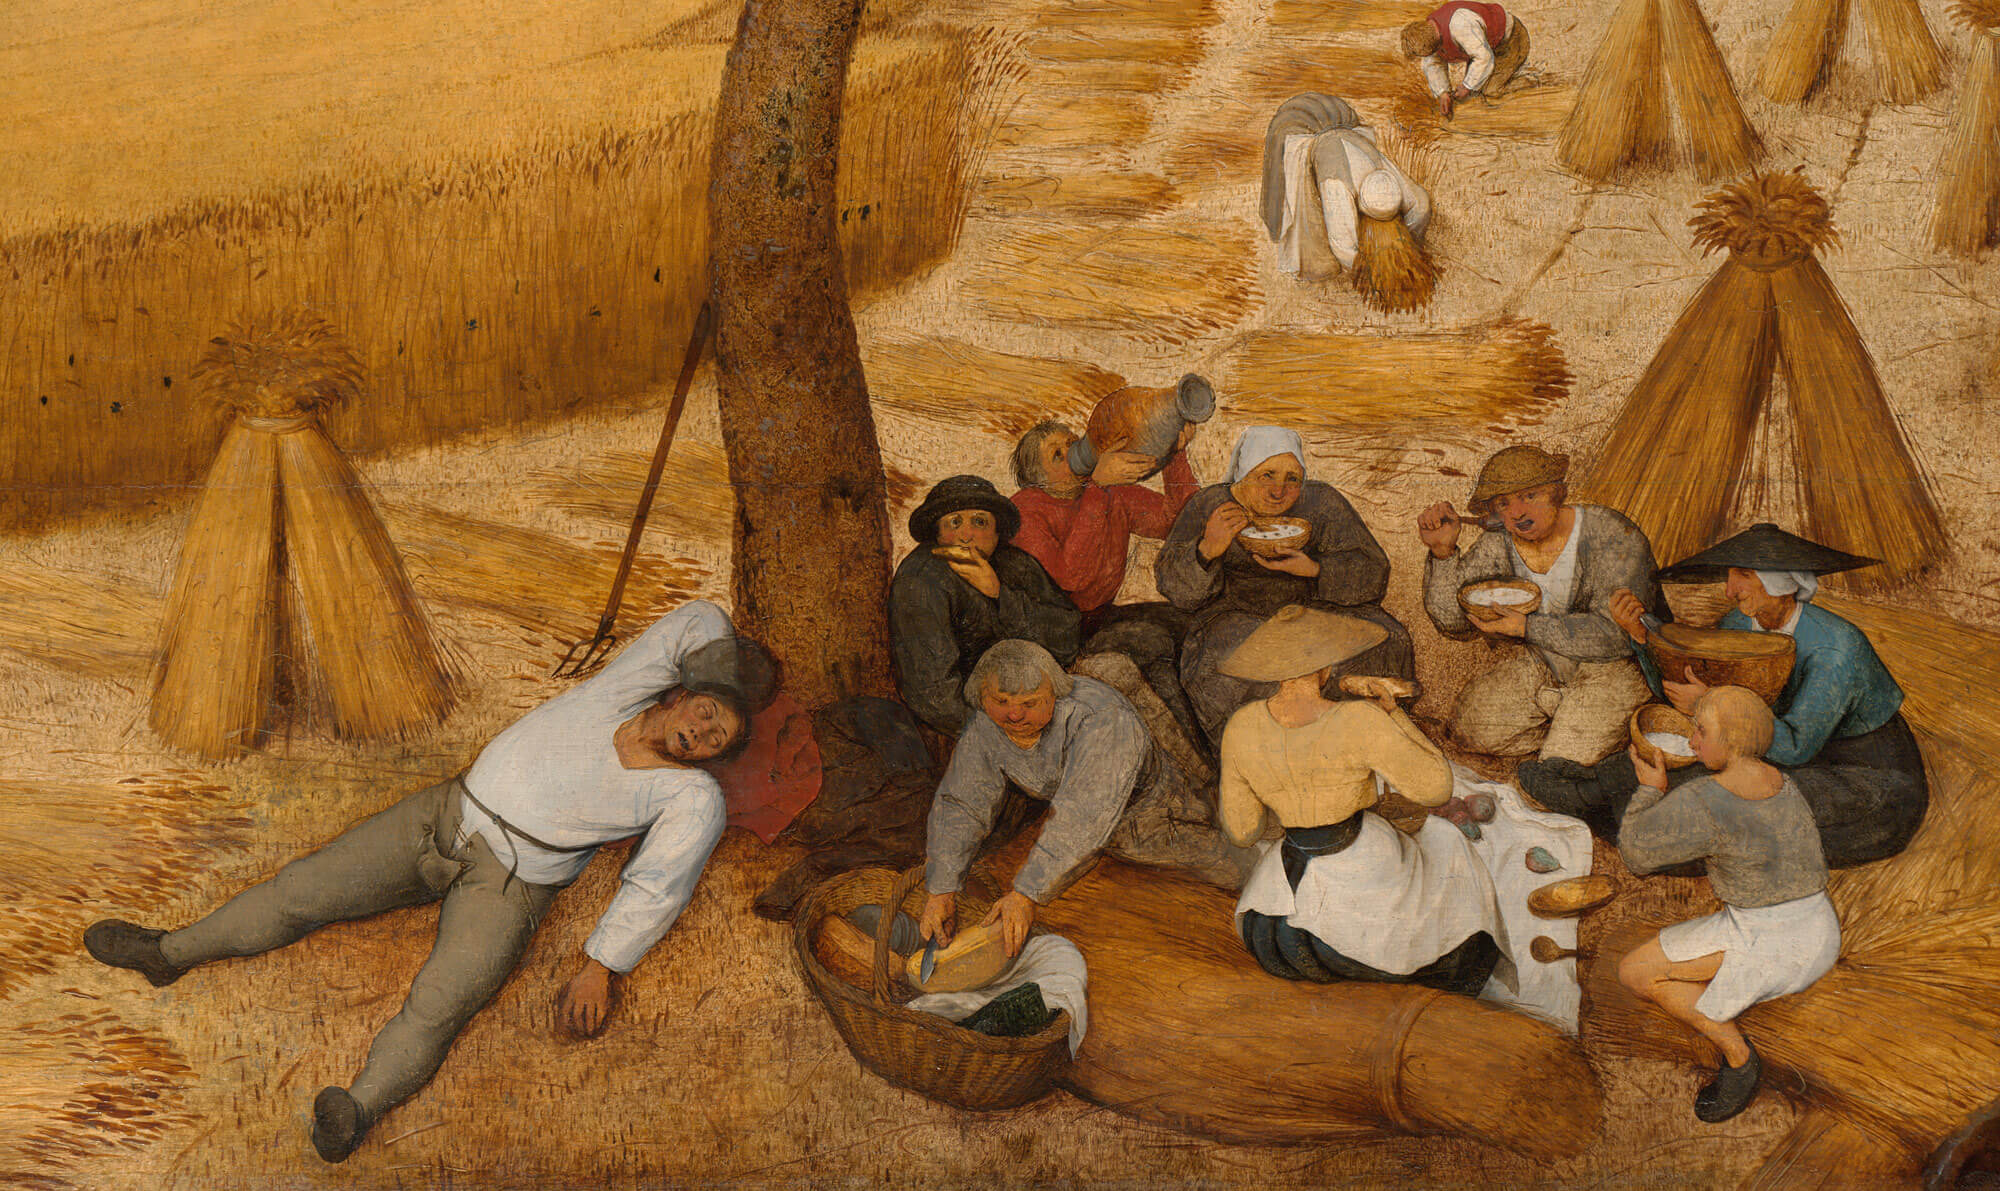 (detail) Pieter Bruegel the Elder, The Harvesters, 1565, oil on wood (Metropolitan Museum of Art)